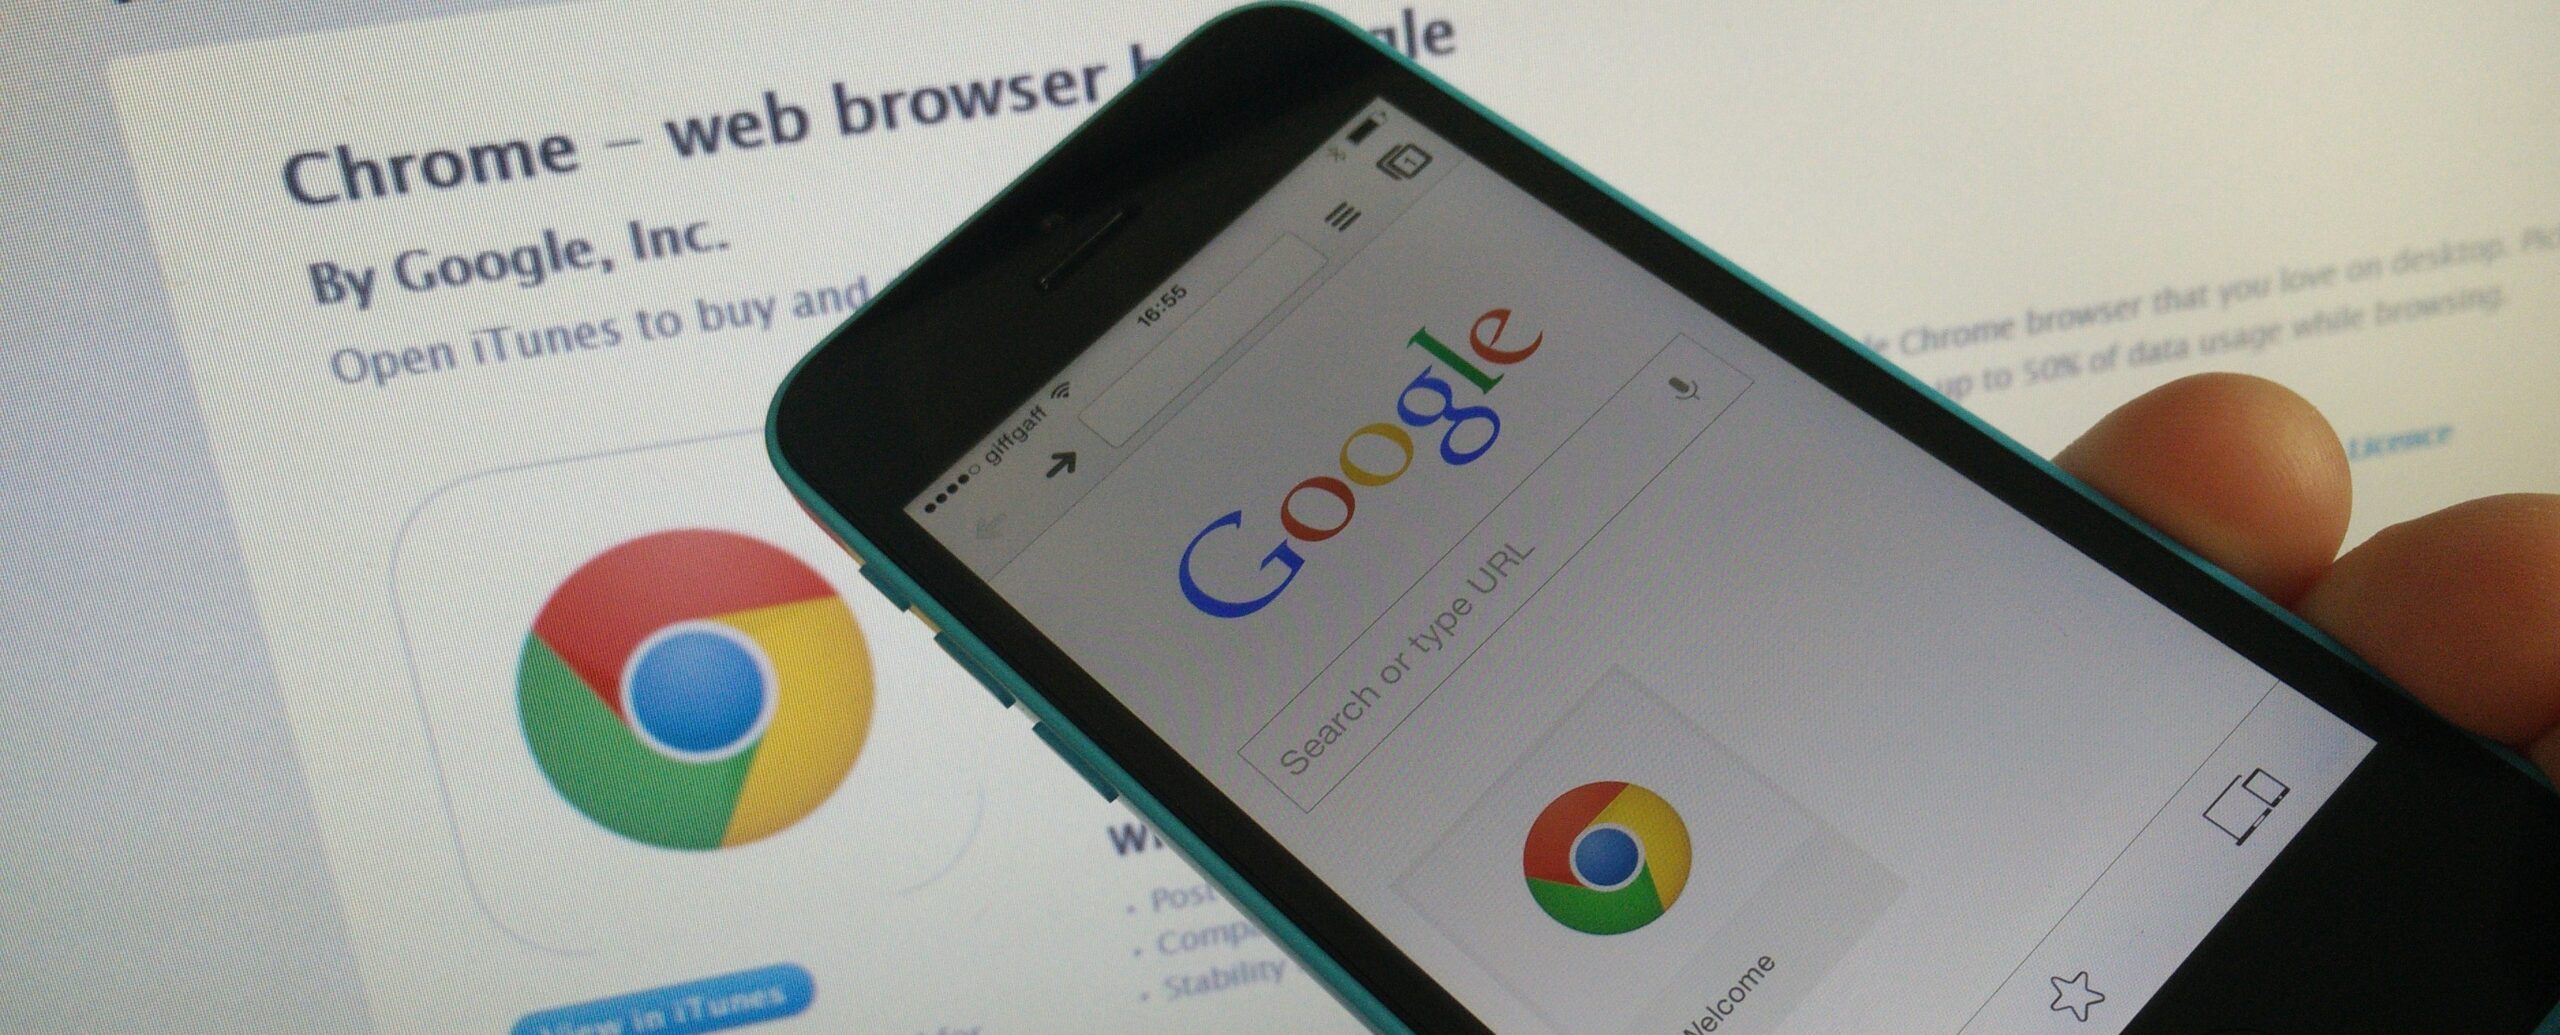 Google谷歌Chrome浏览器发布新版本 安卓7.0已成过去式